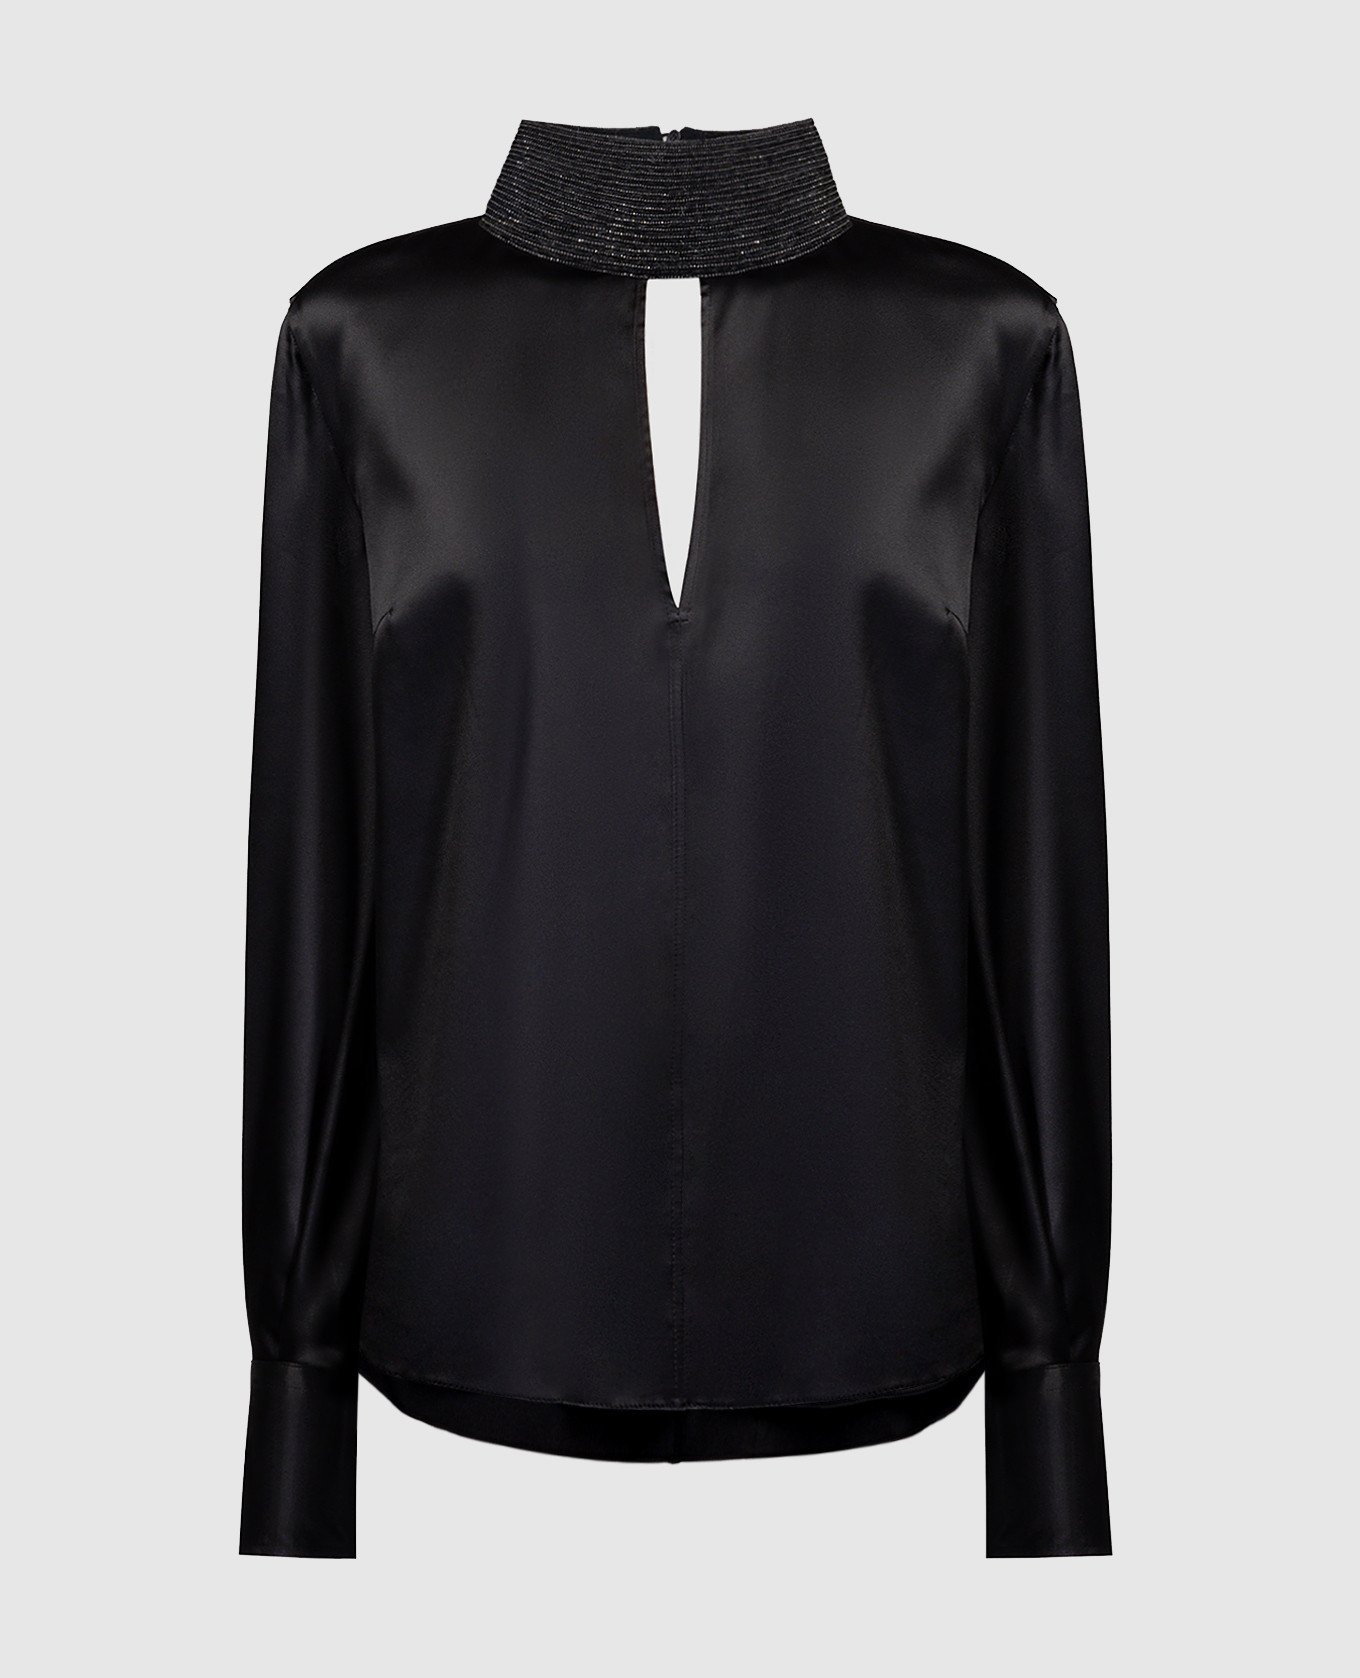 Black silk blouse with monil chain